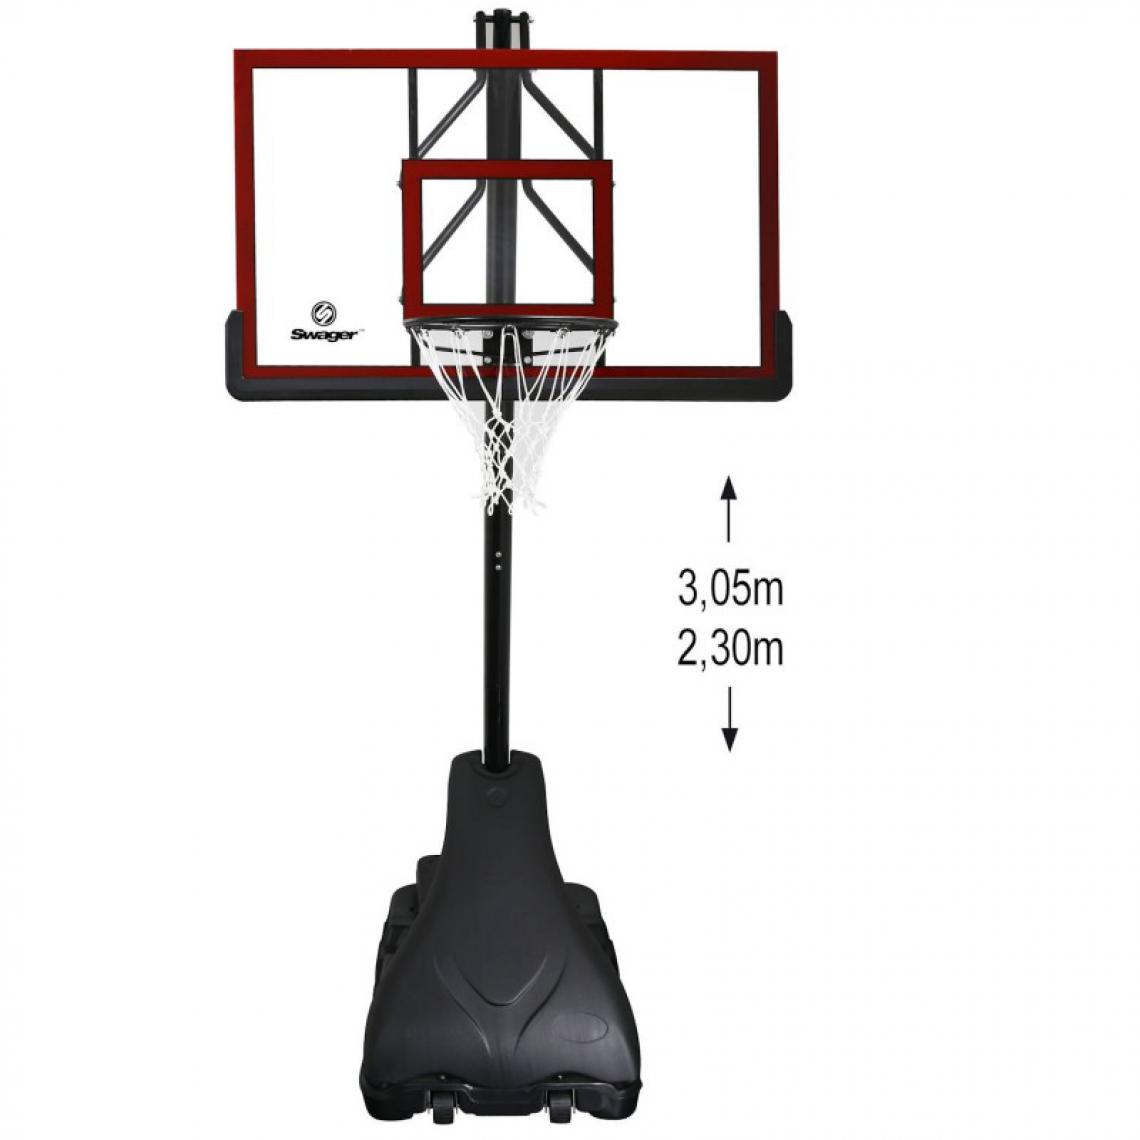 Swager - Panier de Basketball Pro Deluxe Platinium sur Pied et Mobile, Hauteur Réglable de 2,30m à 3,05m - Jeux de balles